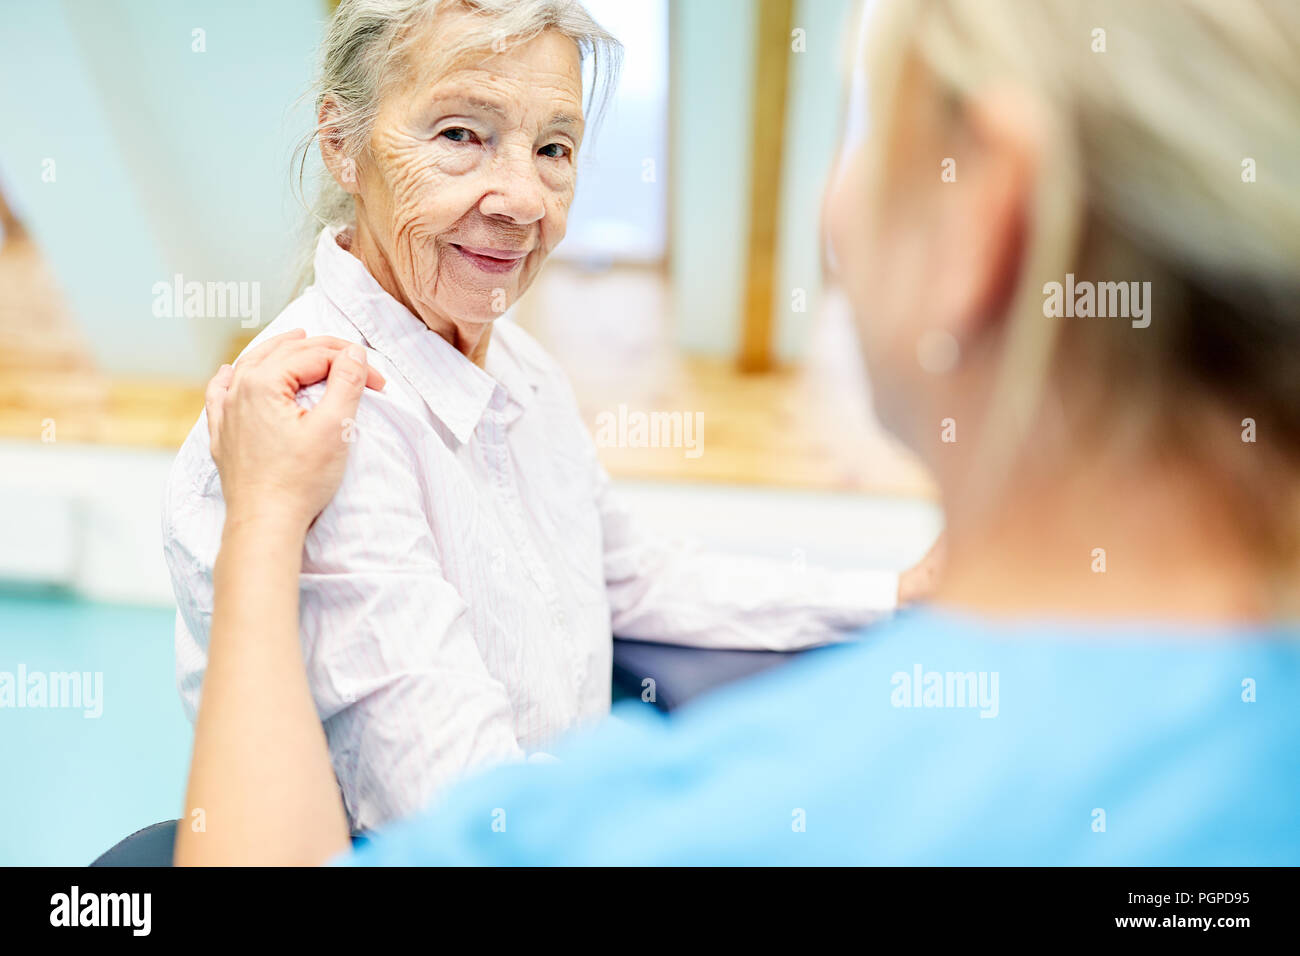 Les soins infirmiers s'occupe d'une personne âgée comme un patient souffrant de démence Banque D'Images